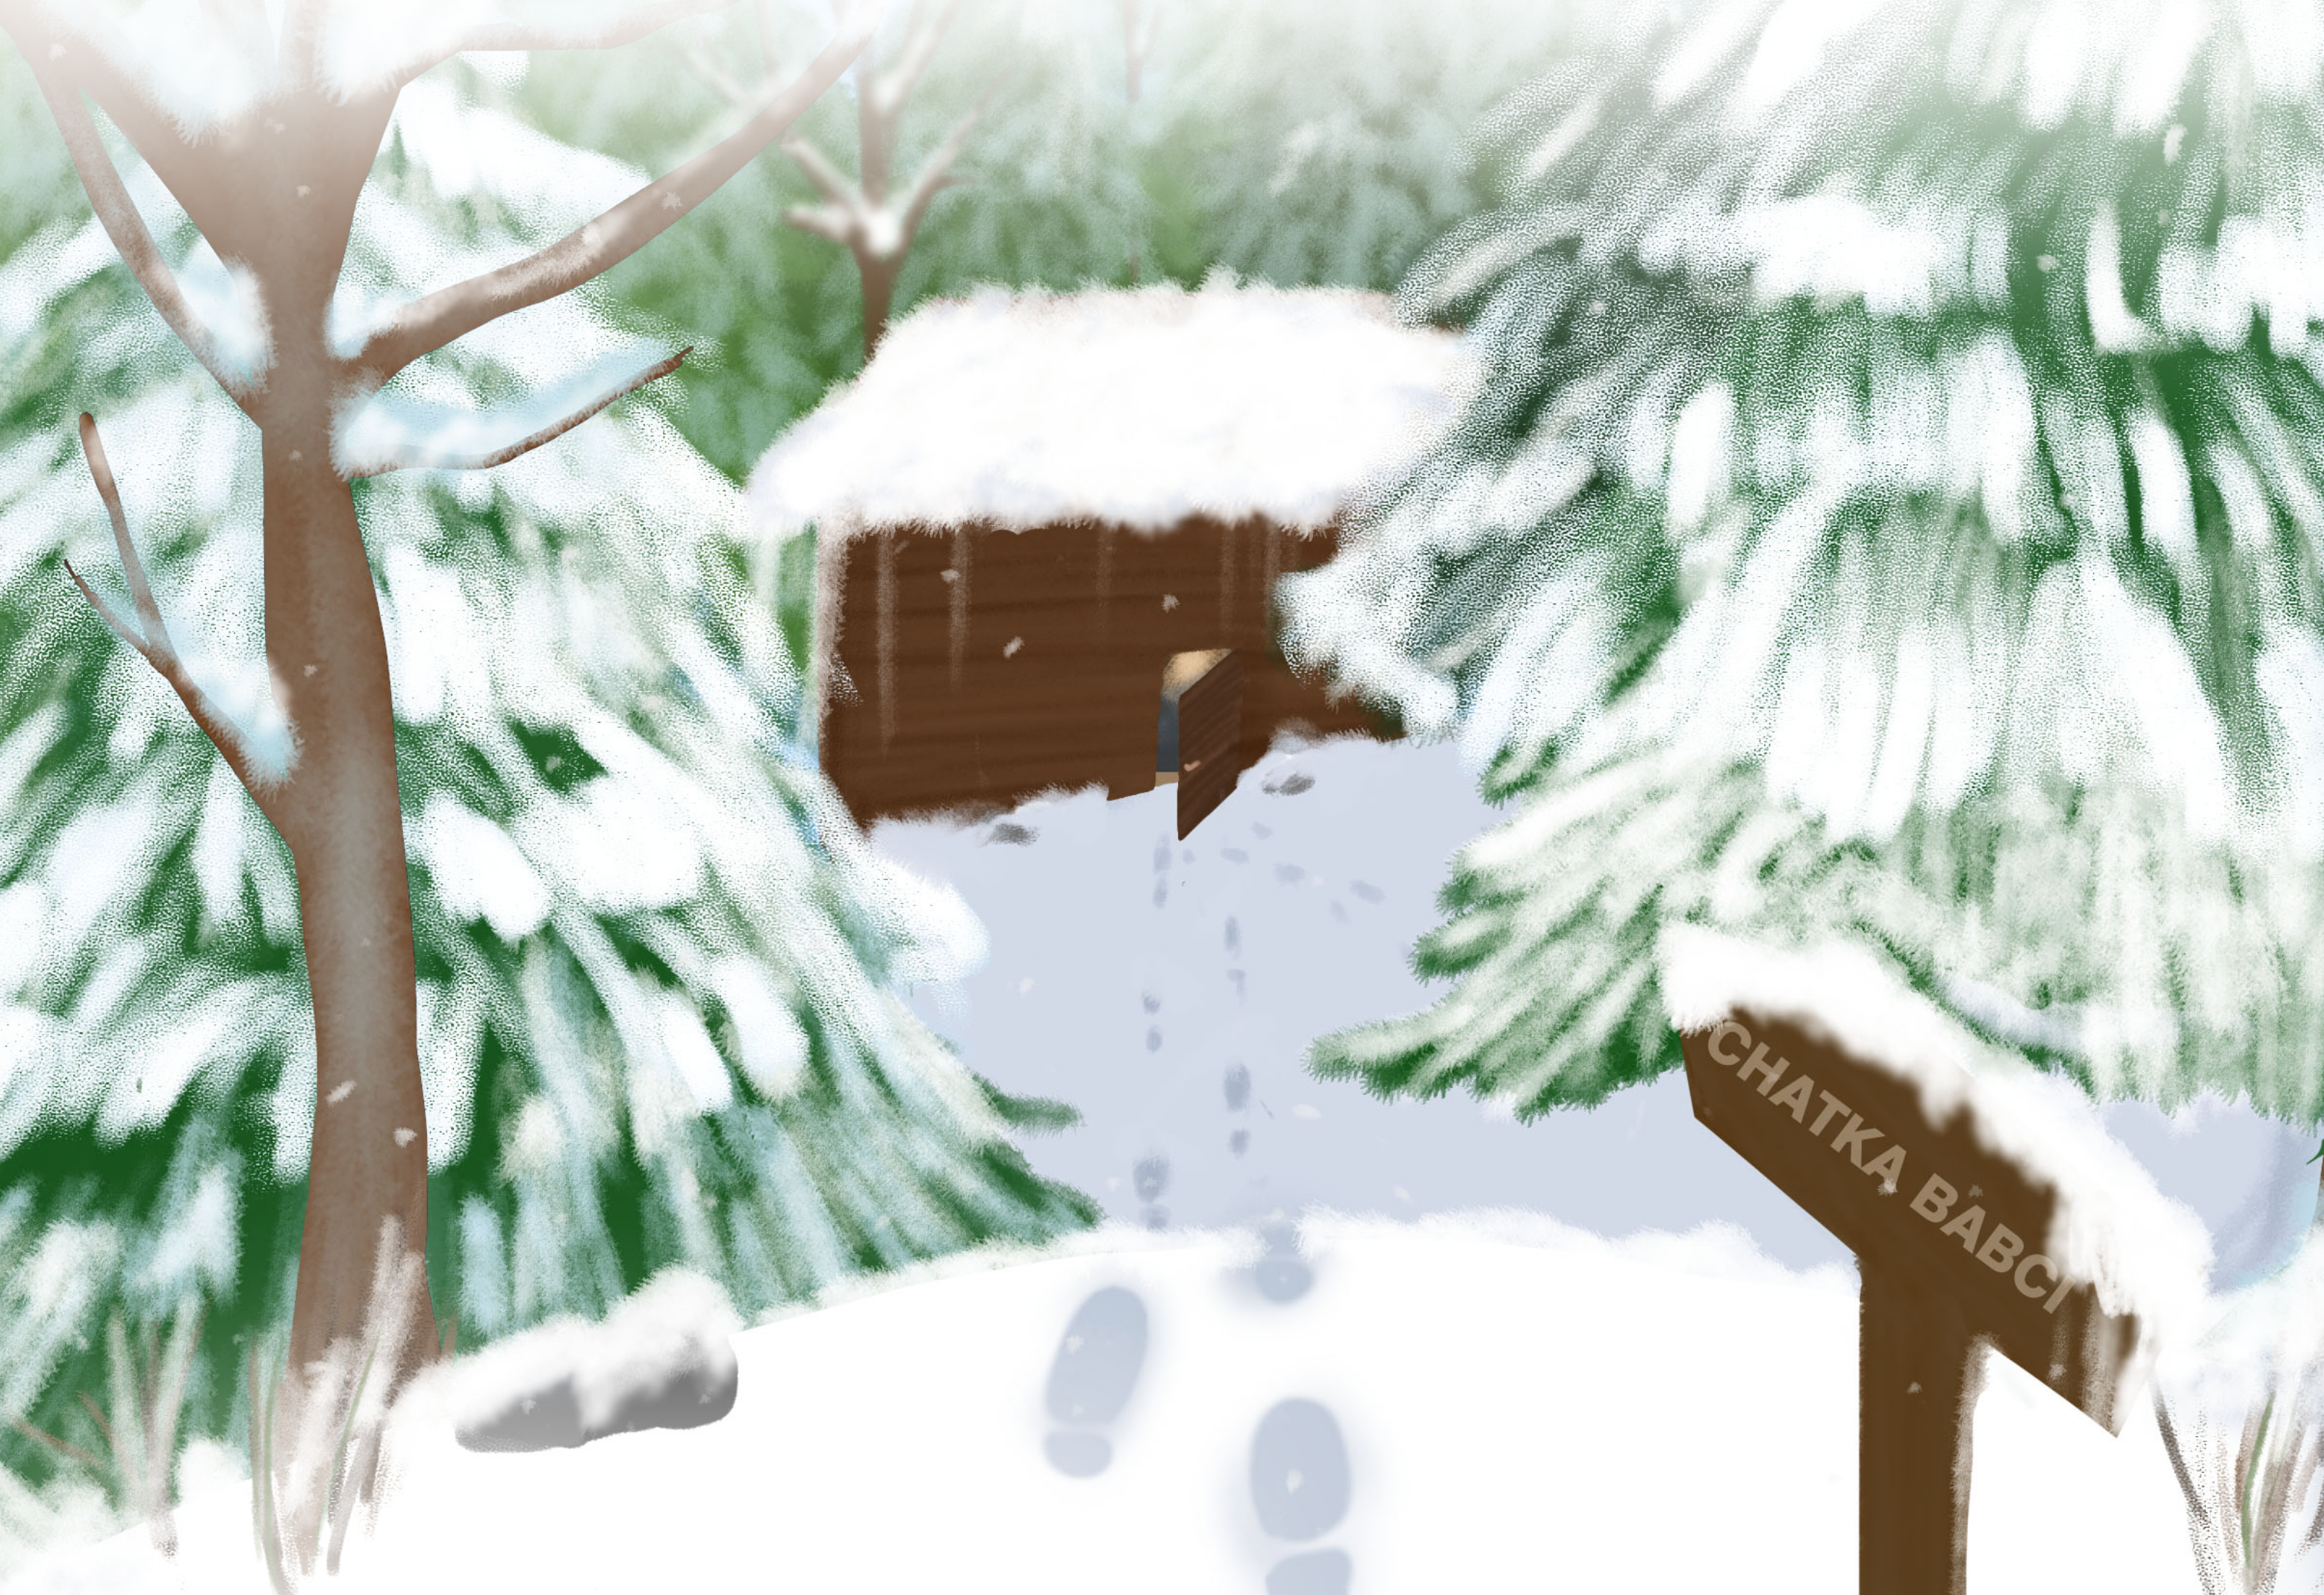 Las, zaśnieżone drzewa, ślady na śniegu prowadzące do drewnianej chatki – grafika akcji